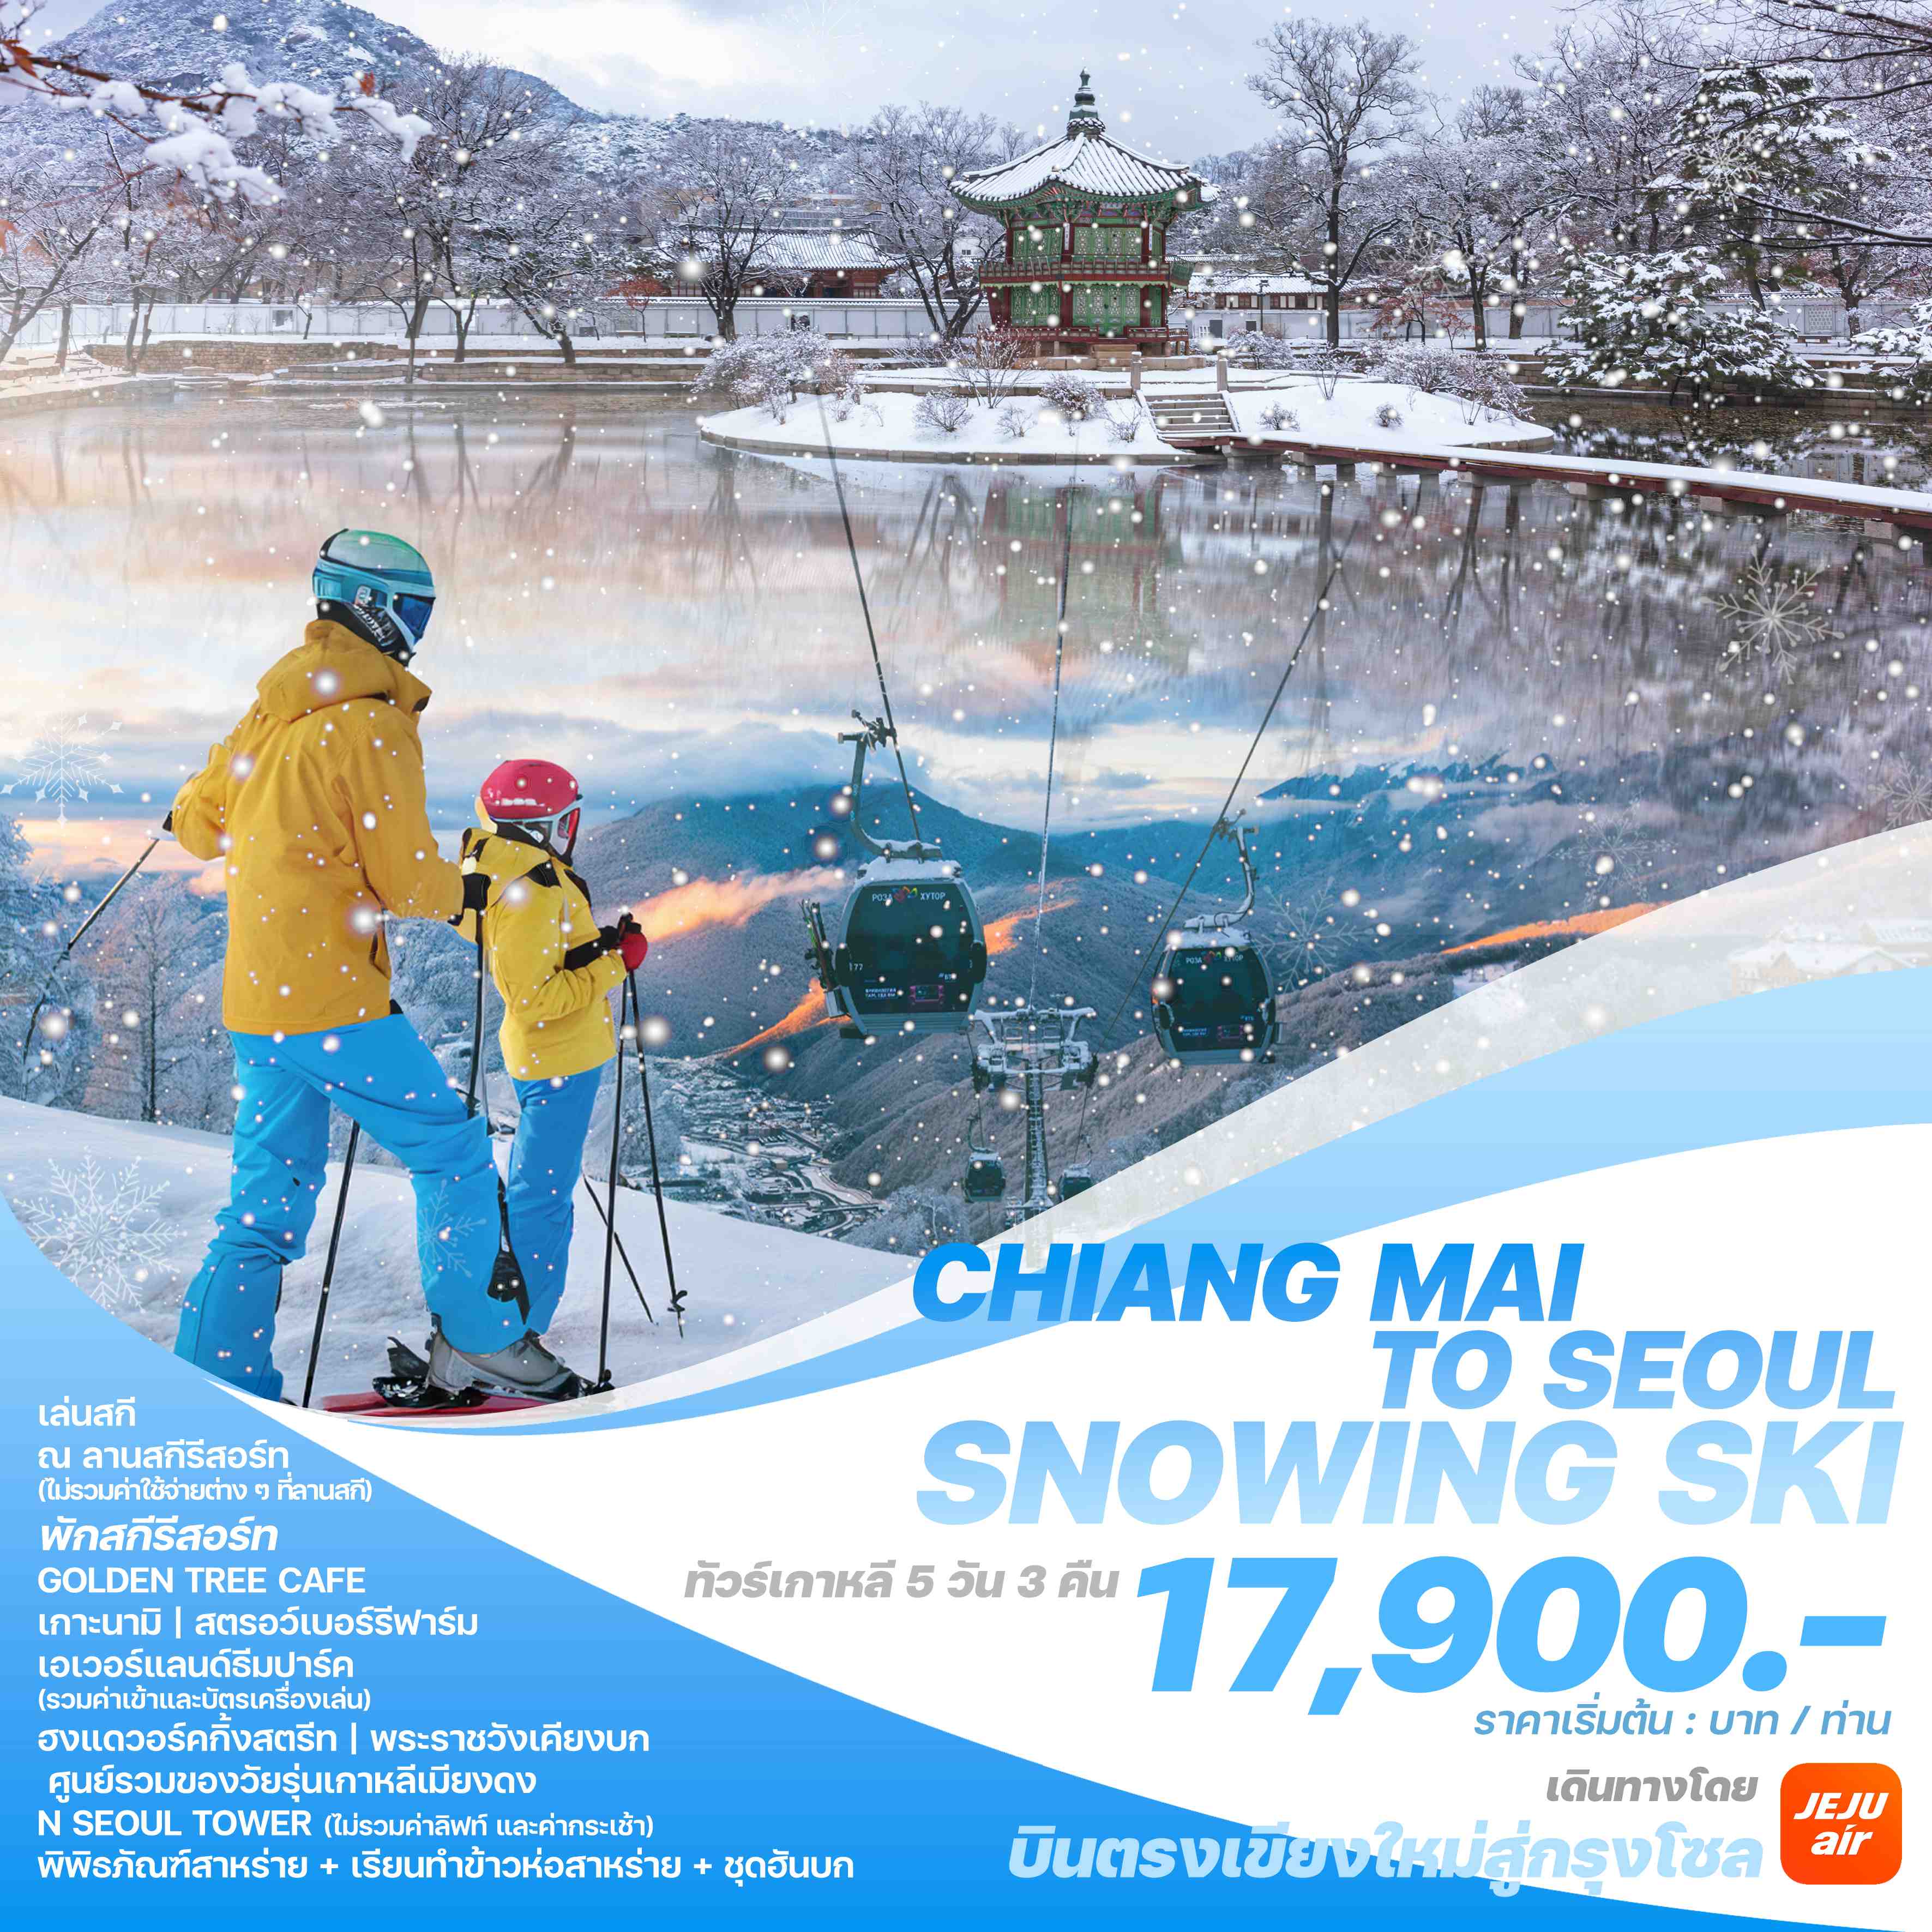 ทัวร์เกาหลี บินตรงเชียงใหม่ - โซล CHIANG MAI TO SEOUL SNOWING SKI 5วัน 3คืน (7C)